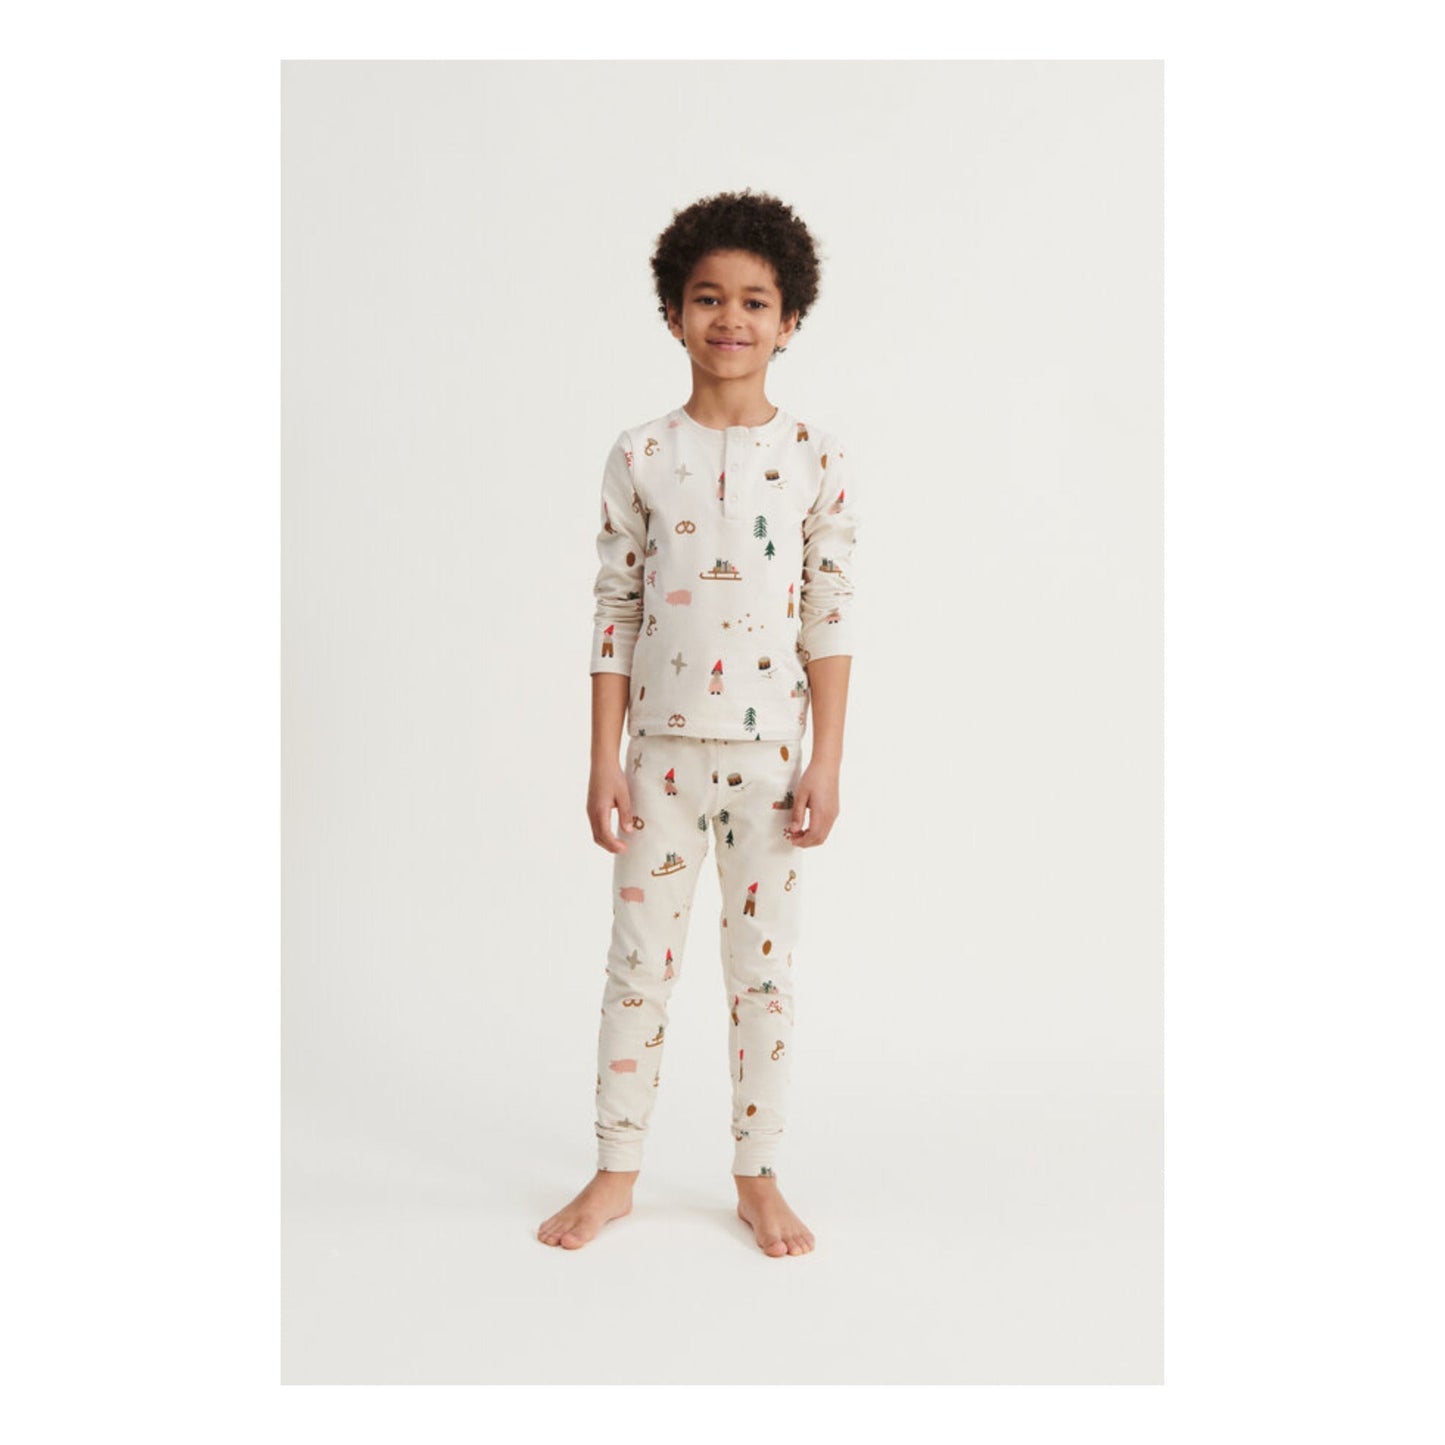 Wilhelm Printed Pyjamas Set - Holiday - Age 6